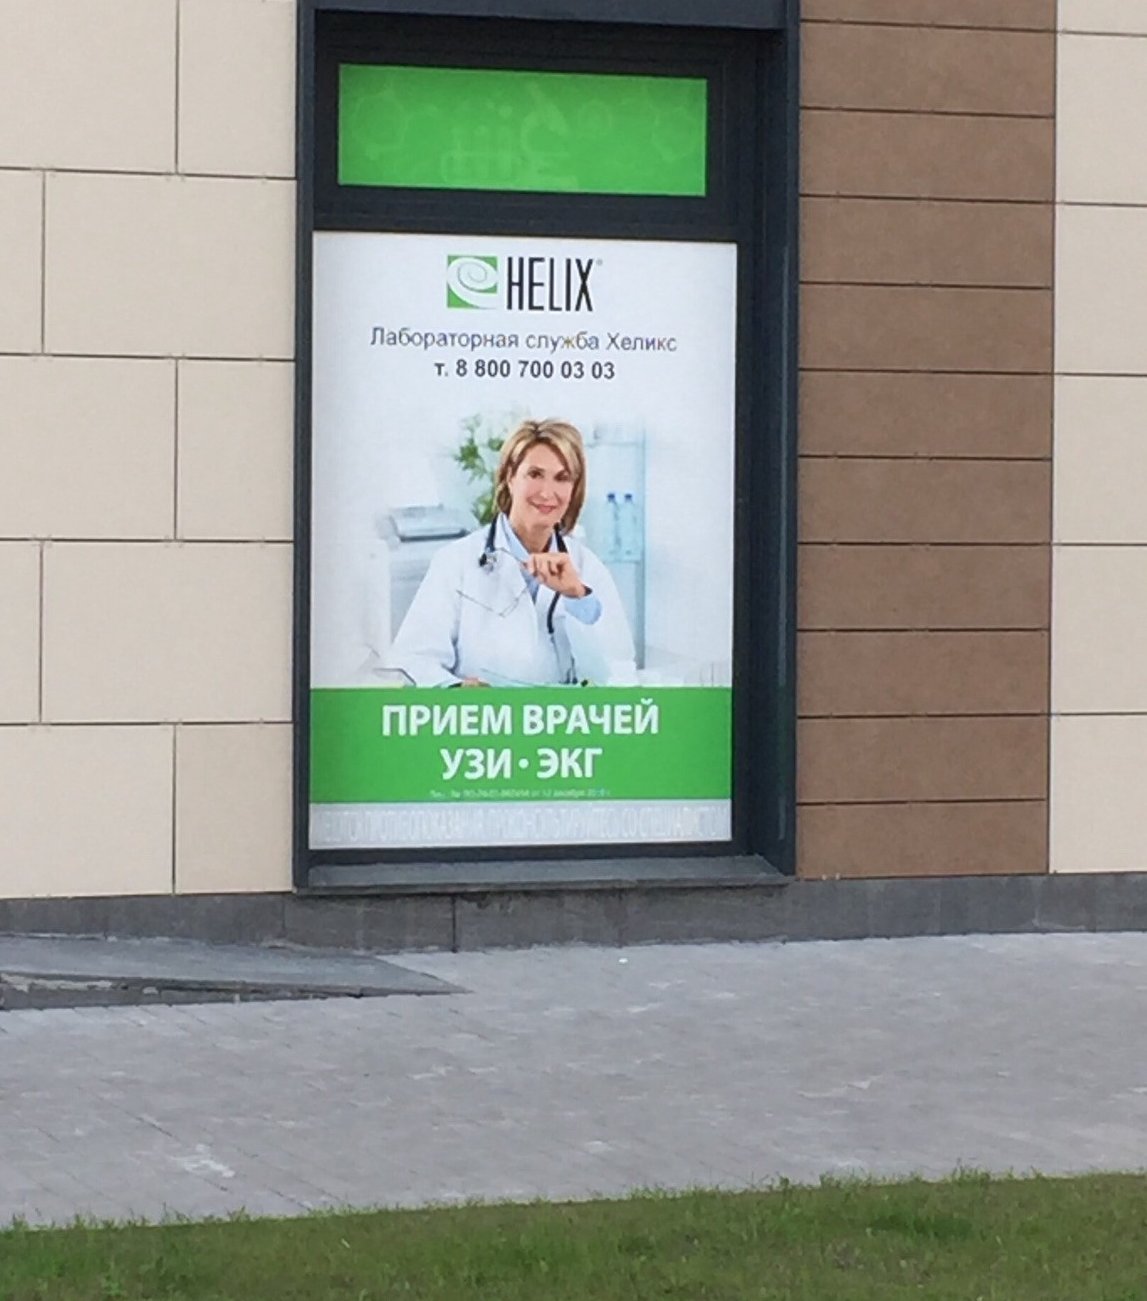 Телефоны центра хеликс. Хеликс Великий Новгород. Хеликс на Кременчугской. Лаборатория Хеликс Тула. Хеликс реклама.